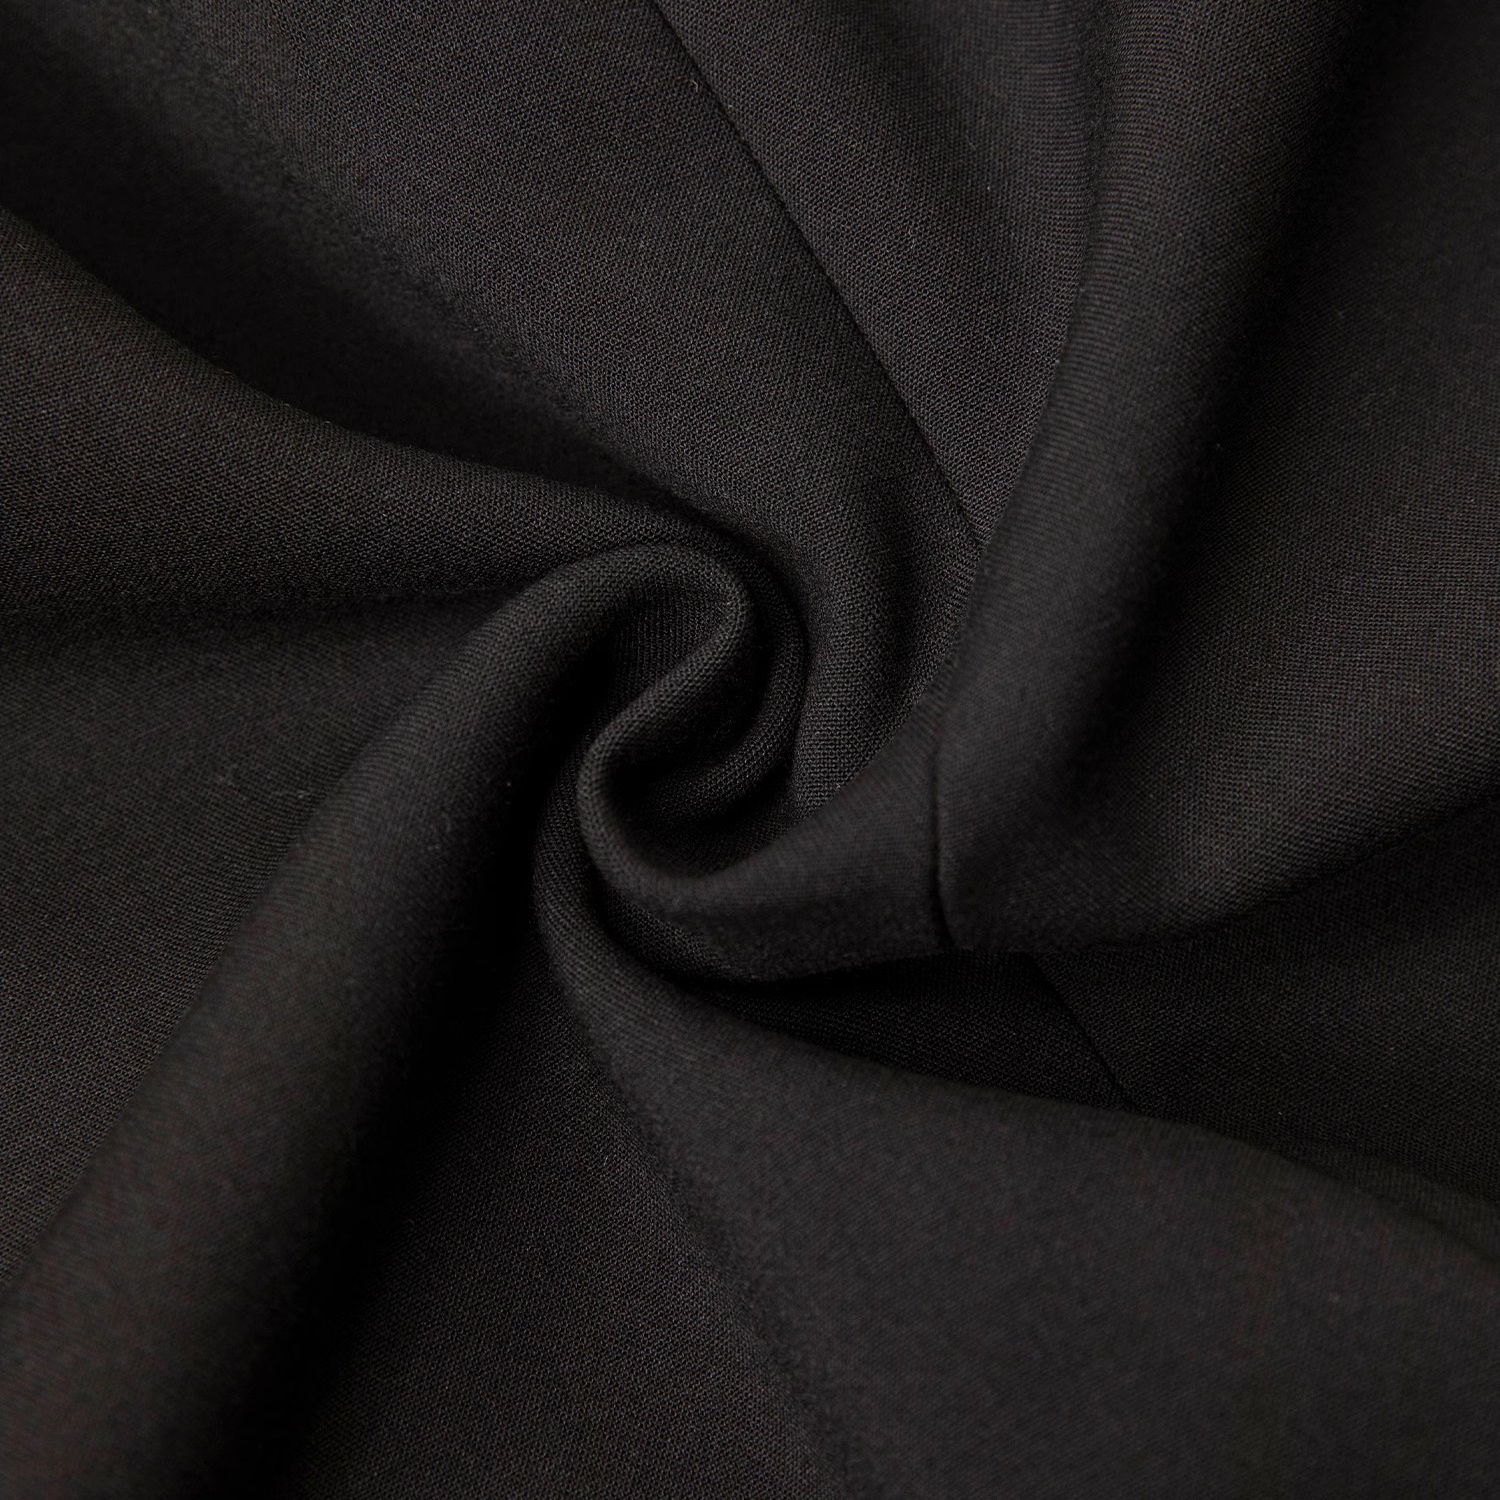 Custom Black Suit Jacket Dresses For Women Manufacturer (4)